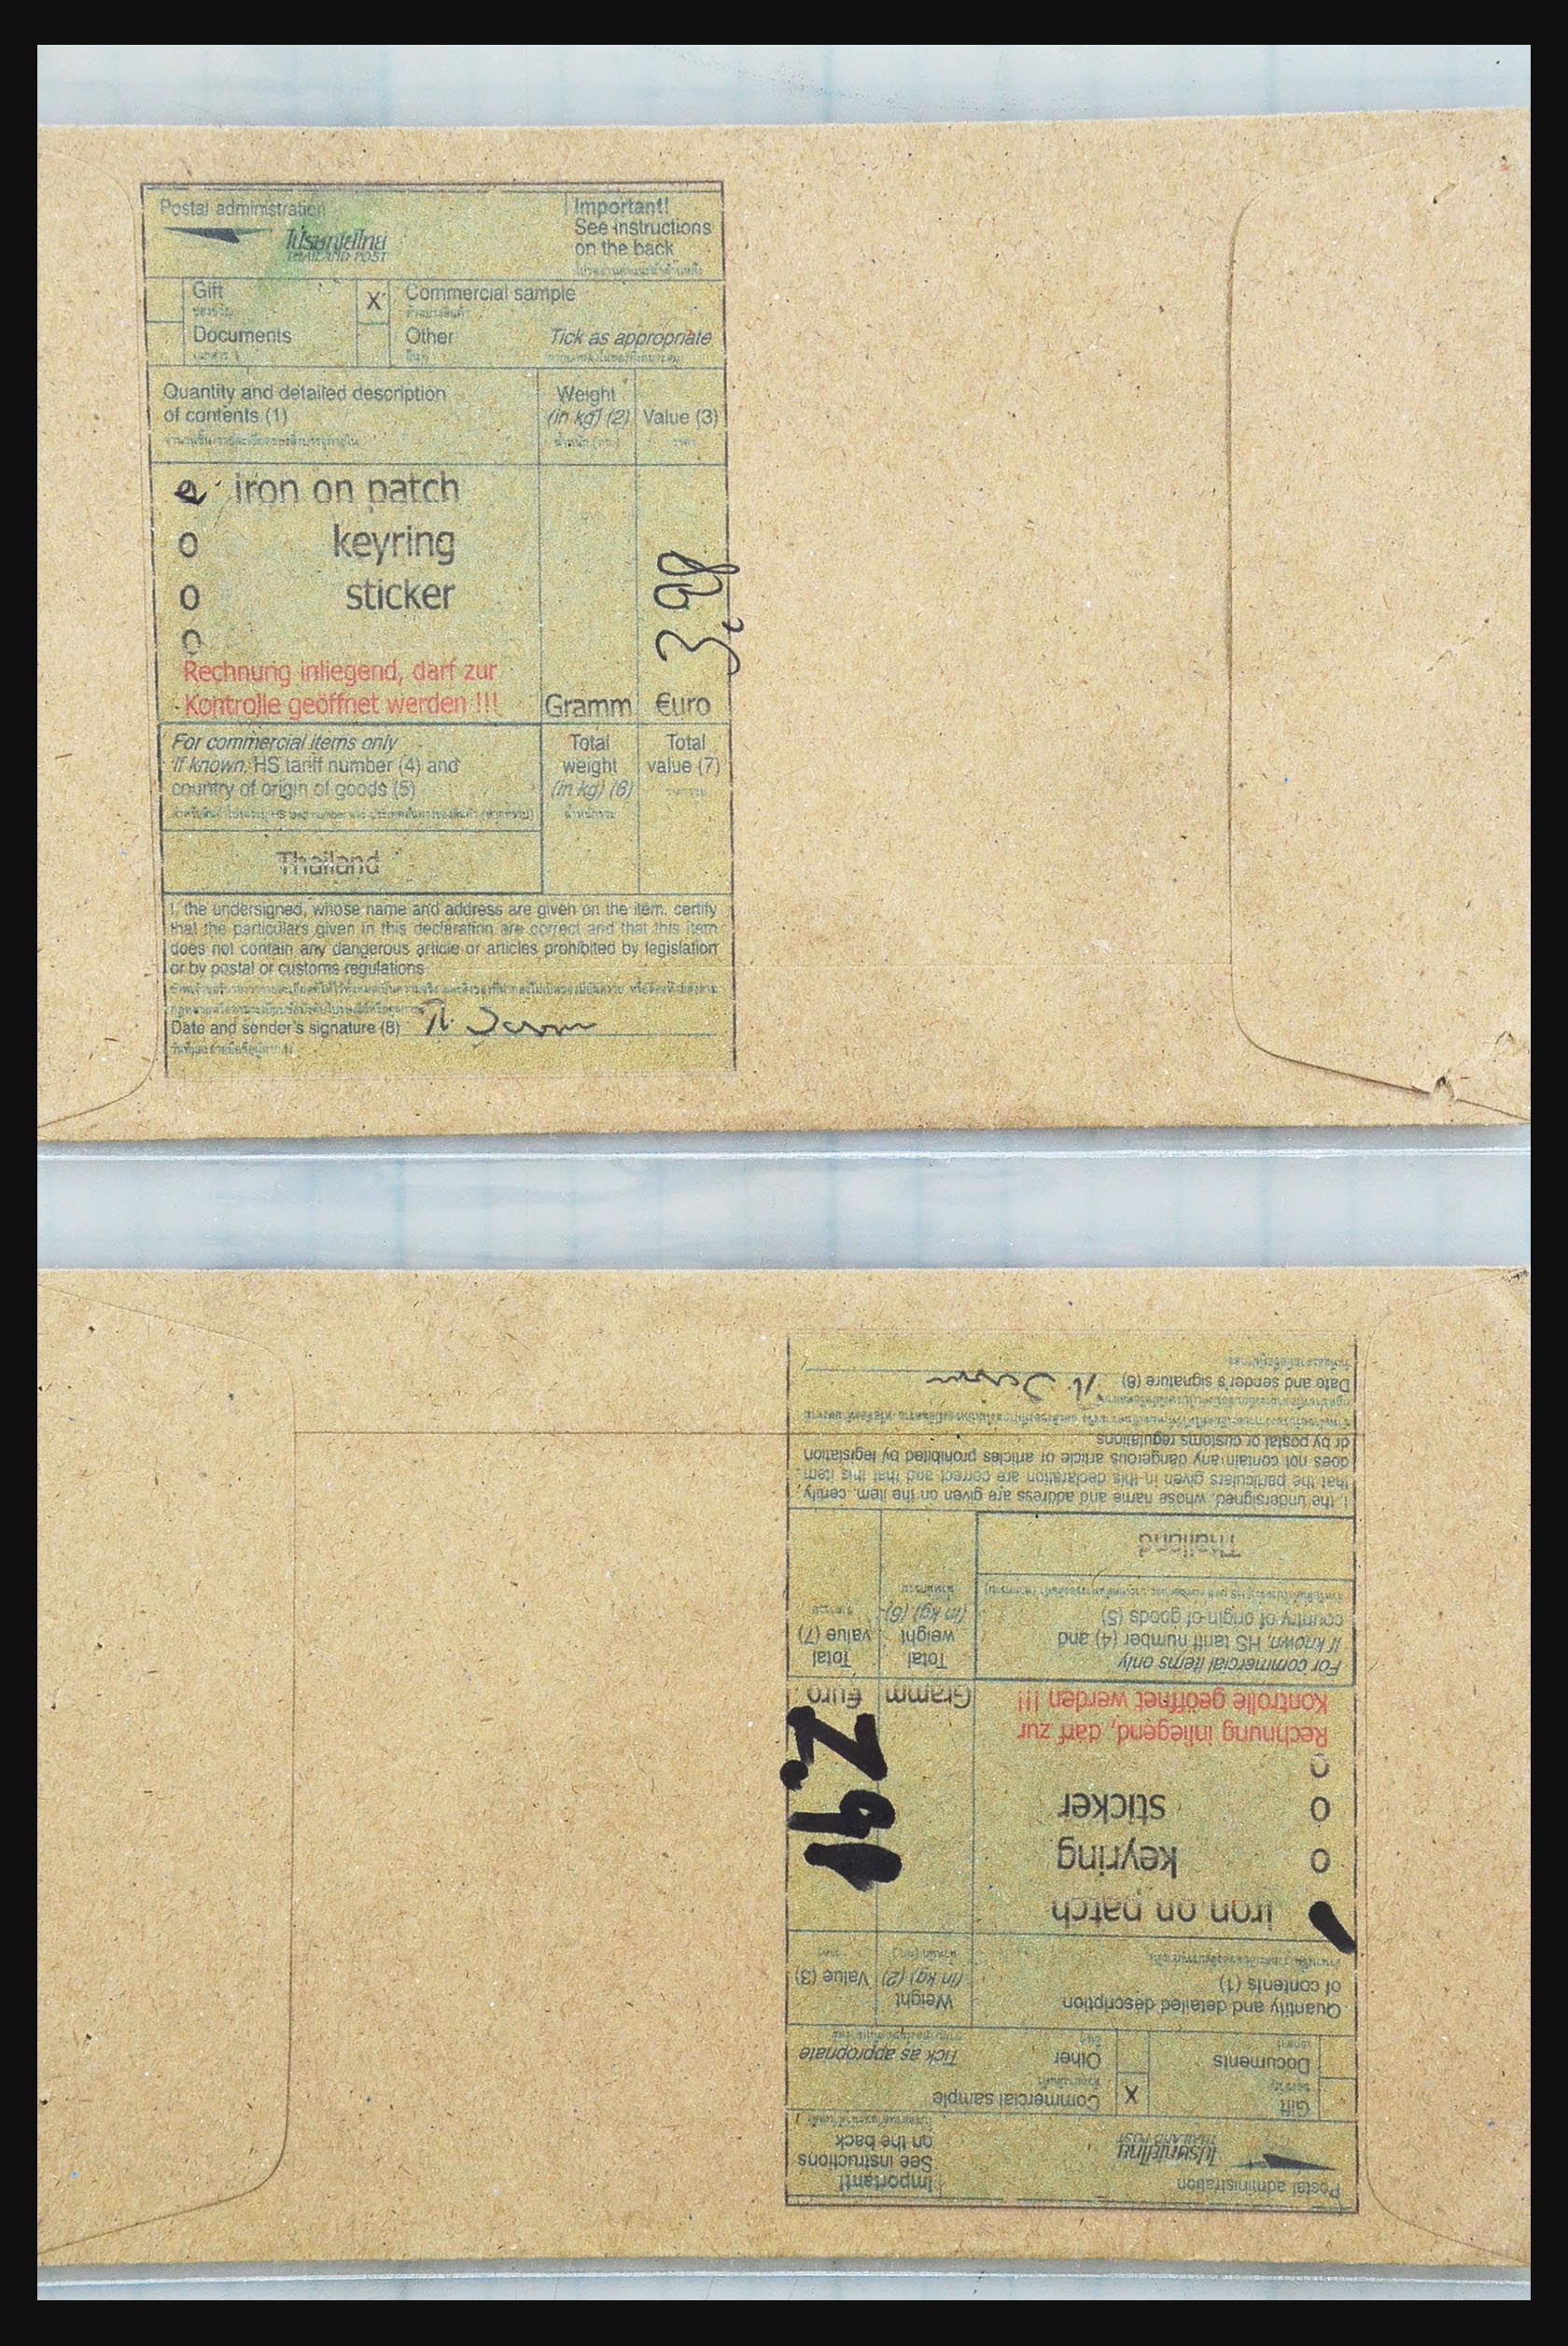 31355 043 - 31355 Azië brieven 1900-1980.